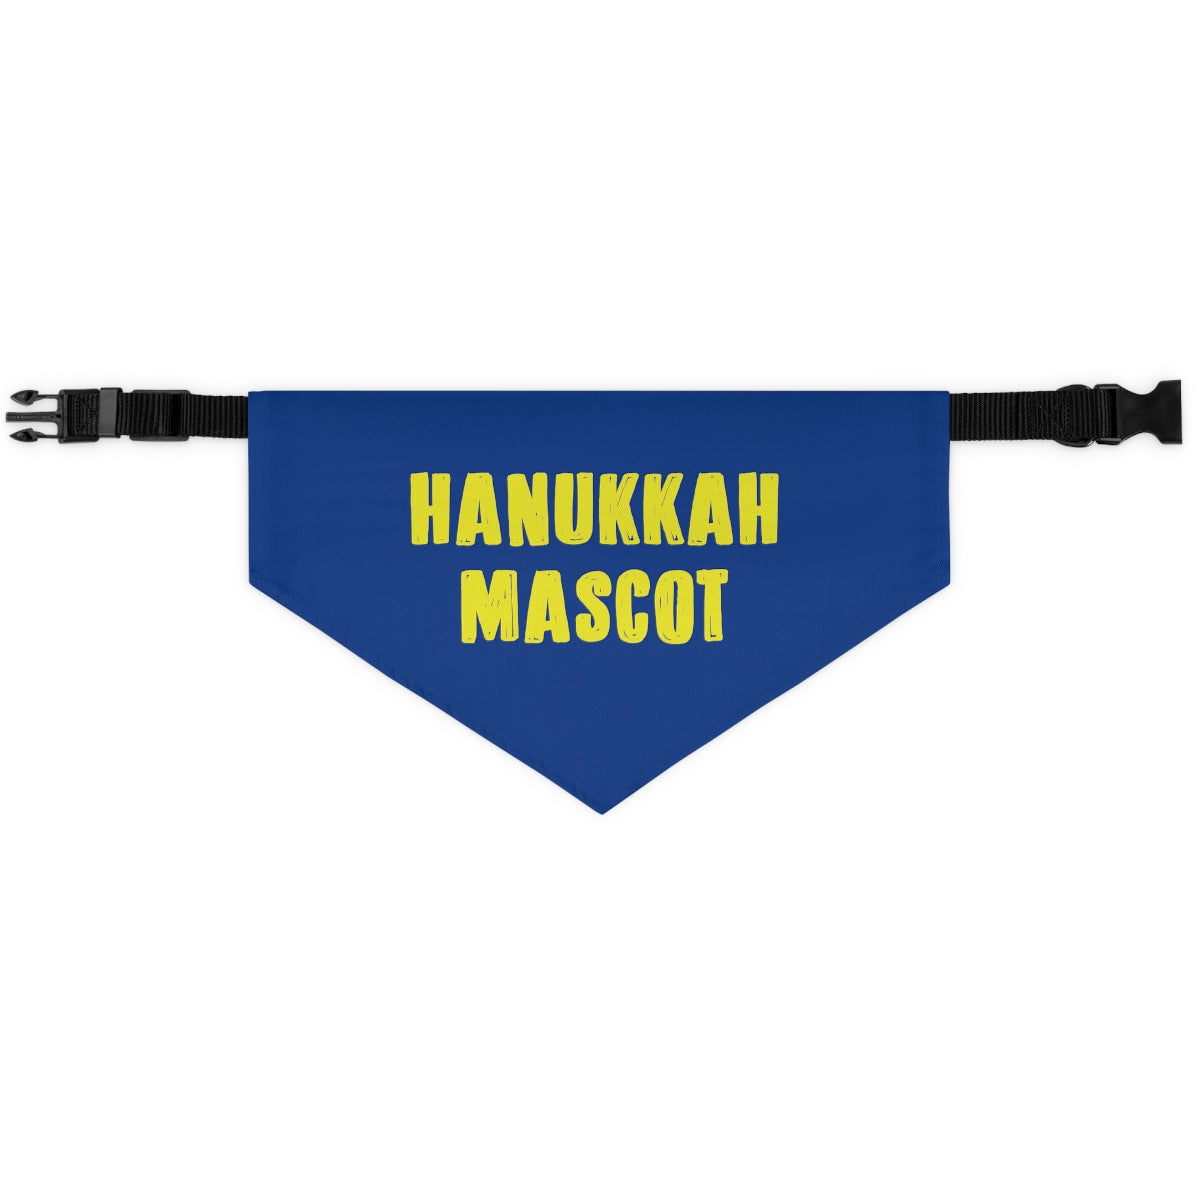 Hanukkah Mascot Dog Bandana Collar